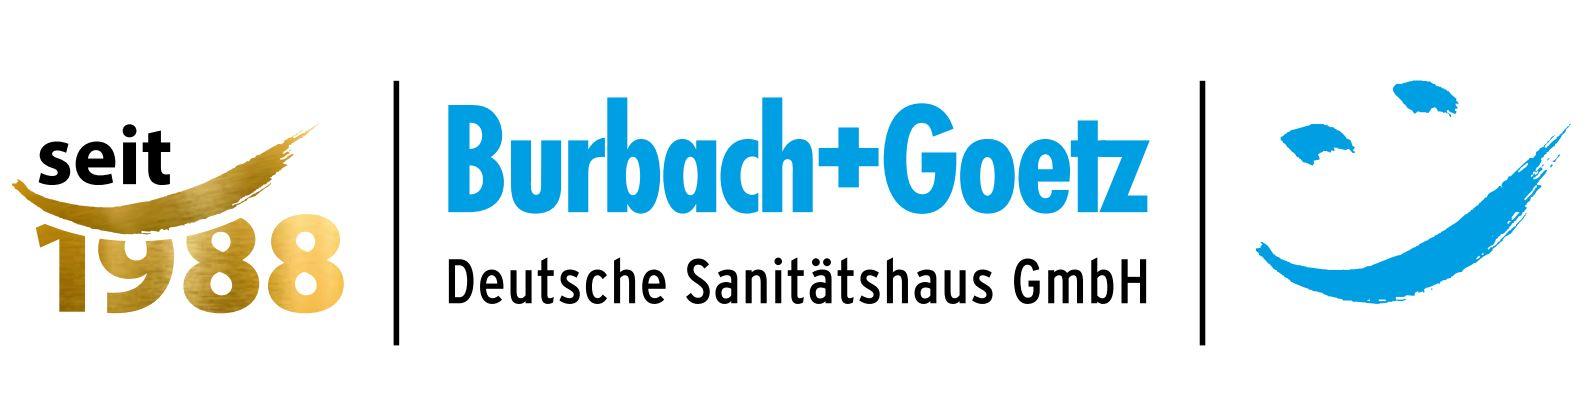 30 Jahre Burbach + Goetz, Ihr Sanitätshaus